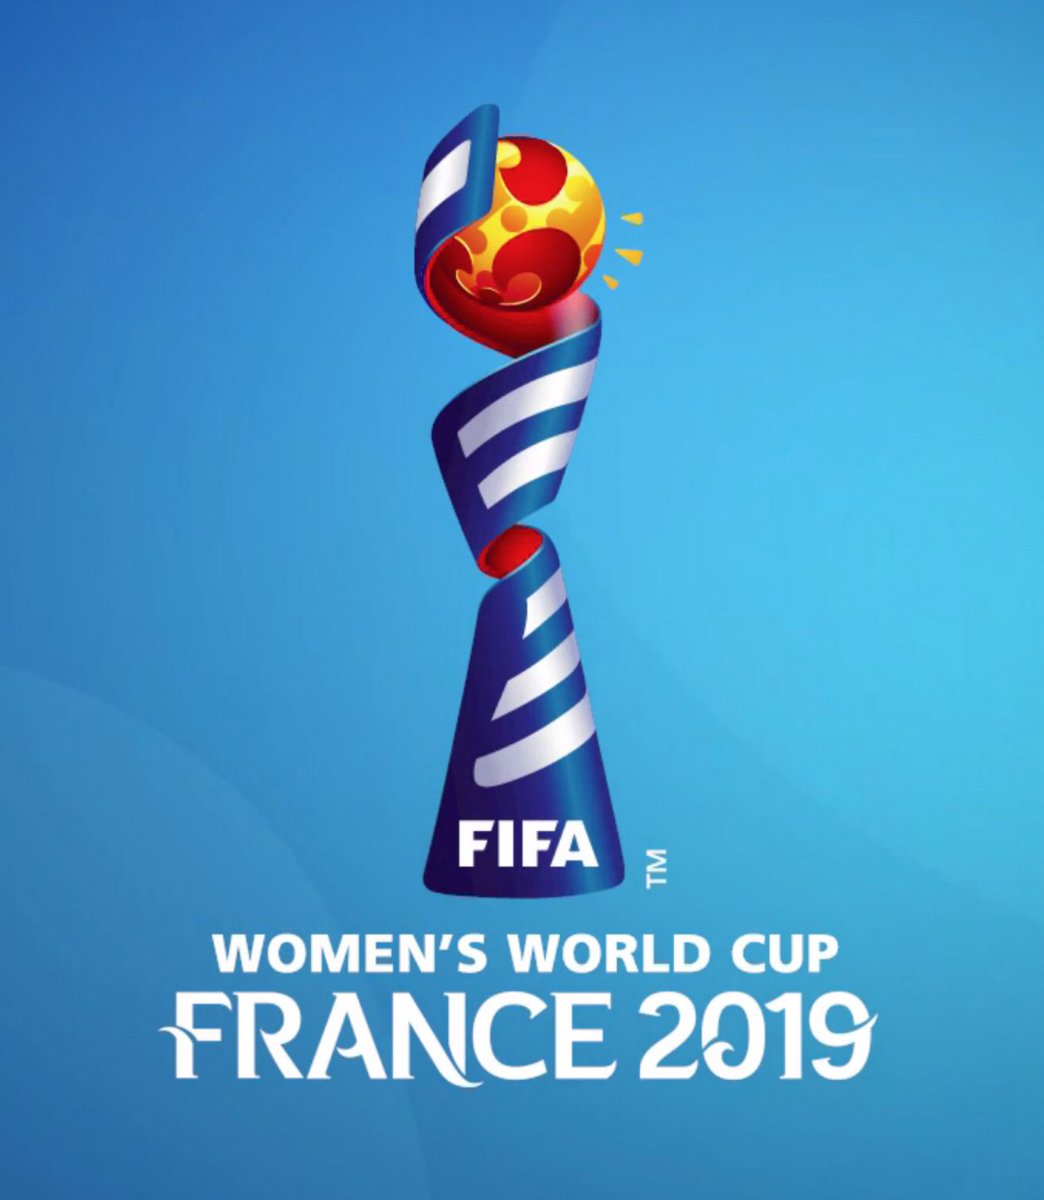 ট ইট র Ester Fifa 動画内にて確認された女子ワールドカップ19 のロゴ Fifa19 では女子ワールドカップのライセンスが取得 ただし 独自モードがあるか ジャーニー内でのみ使われるものかどうかは現時点では不明